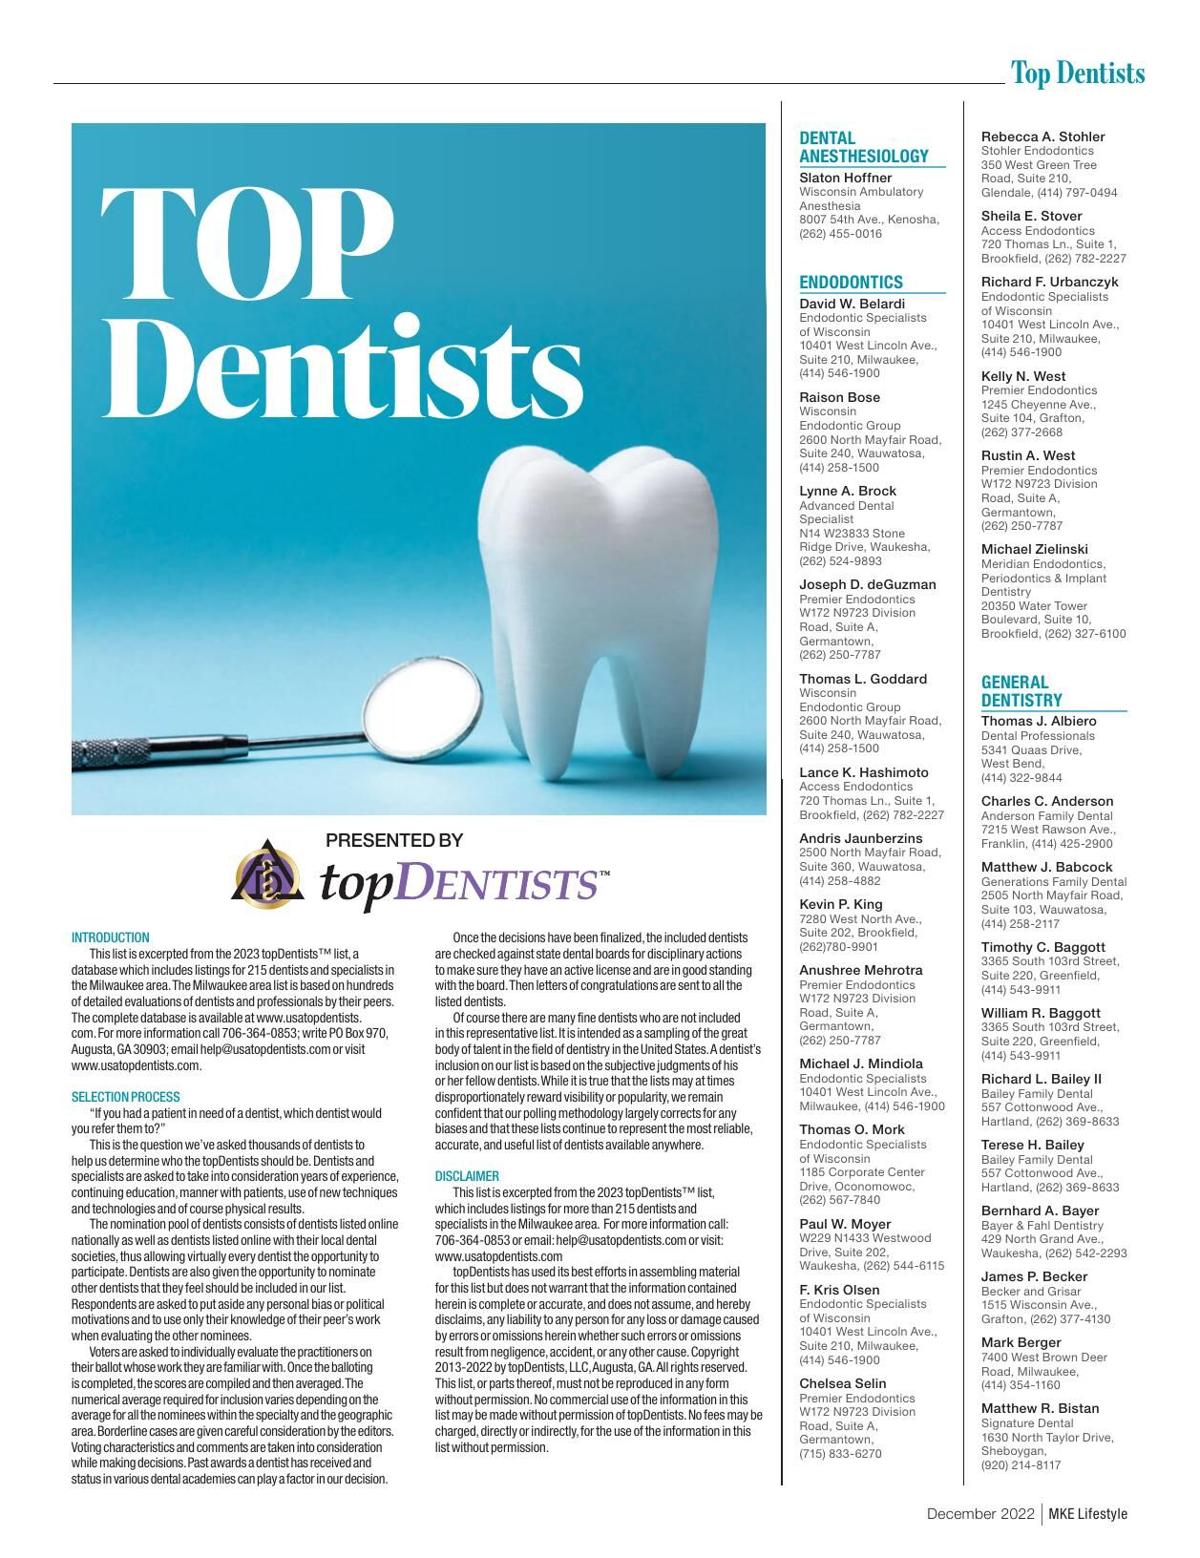 Top Dentist - Dec 2022.pdf